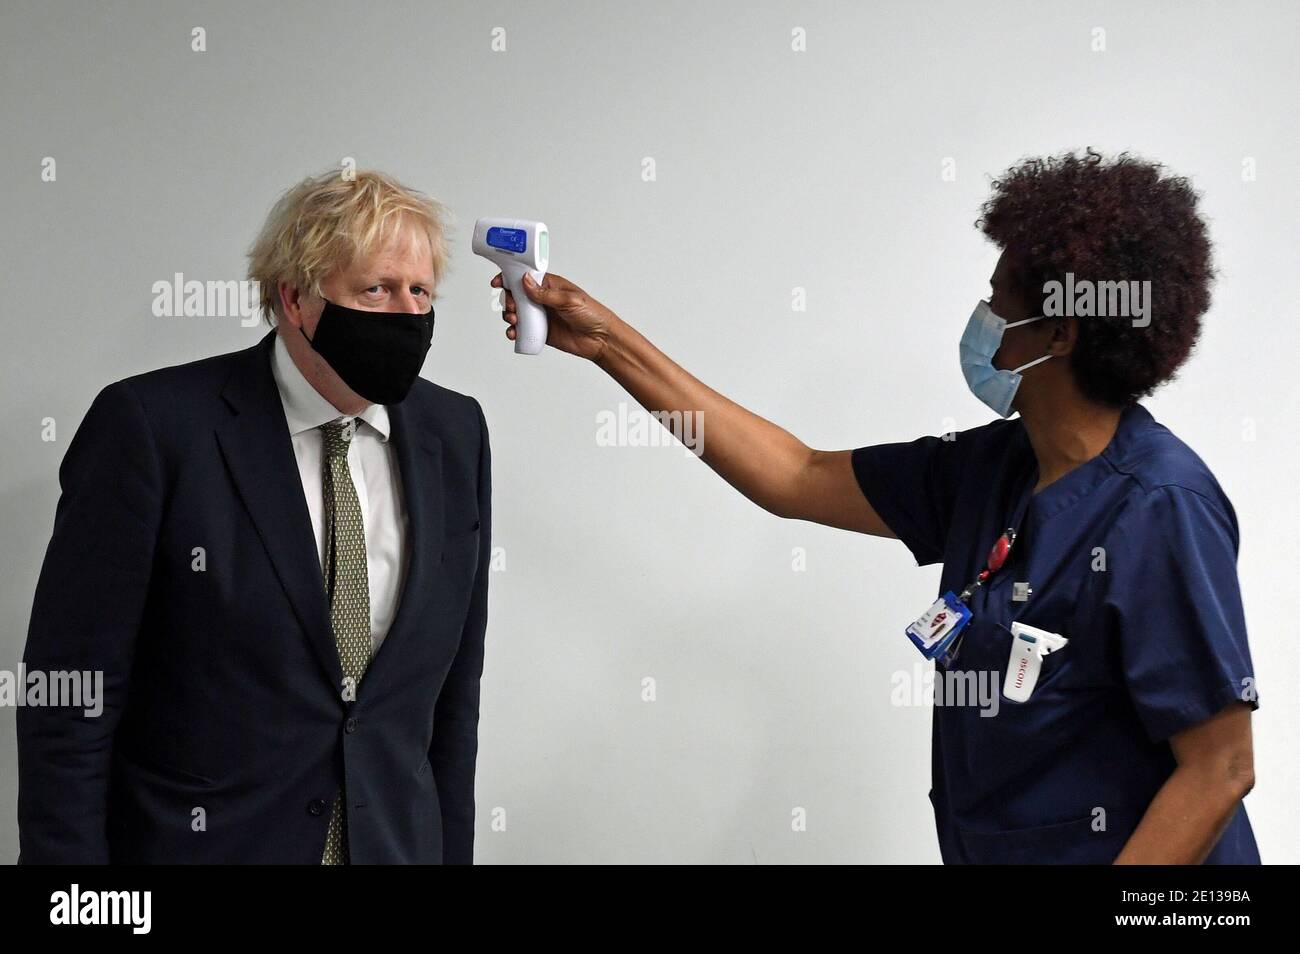 La température du Premier ministre britannique Boris Johnson est vérifiée lors d'une visite à l'hôpital Chase Farm, dans le nord de Londres, en Grande-Bretagne, le 4 janvier 2021. Stefan Rousseau/Pool via REUTERS Banque D'Images